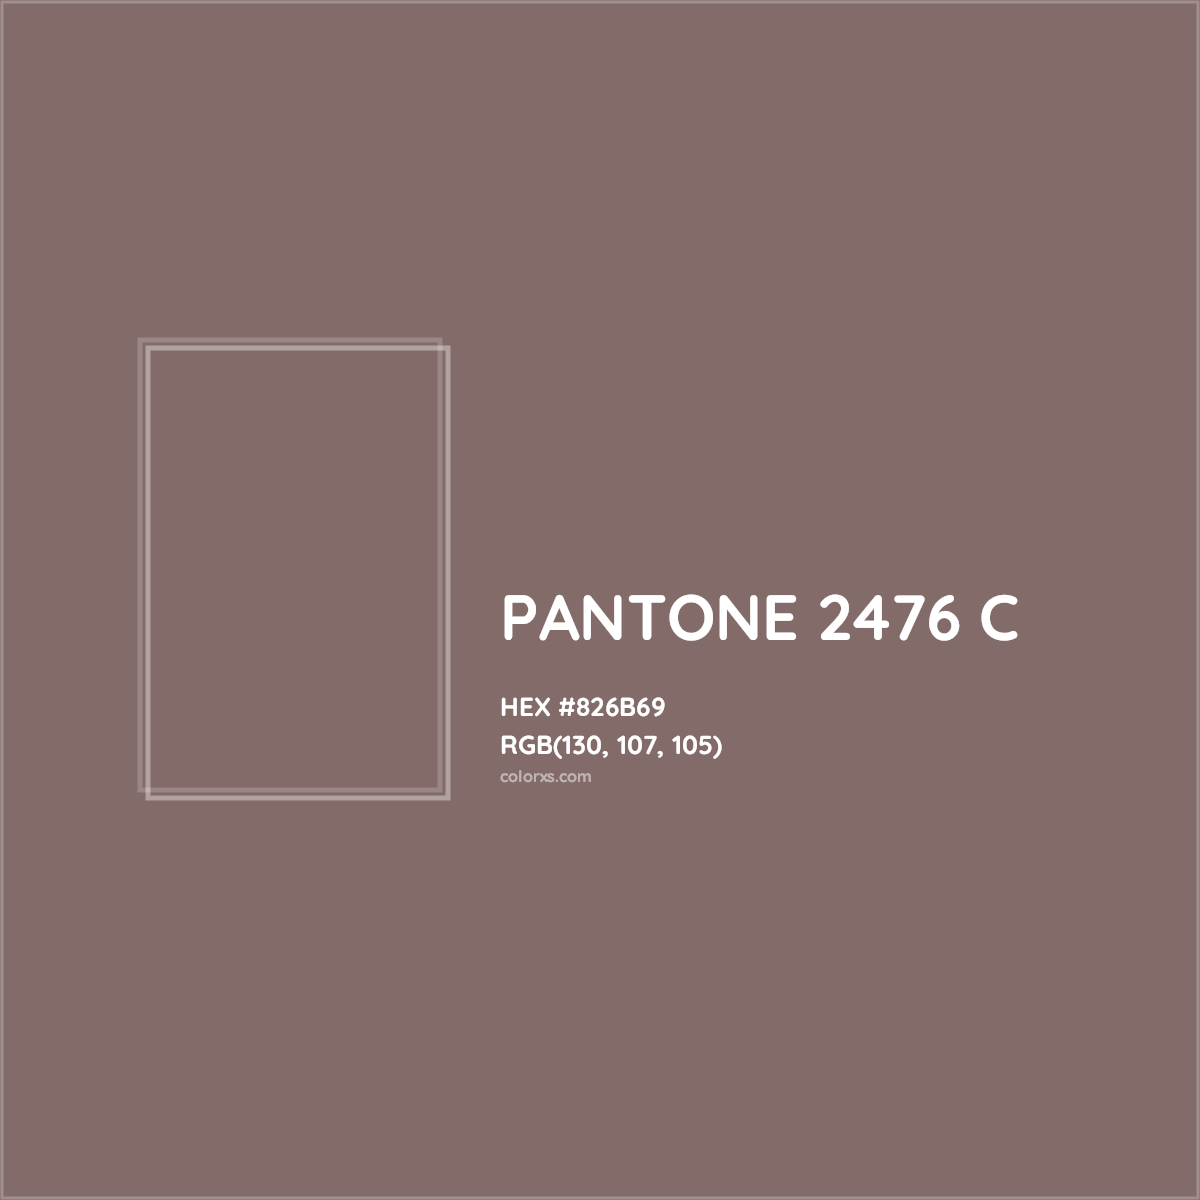 HEX #826B69 PANTONE 2476 C CMS Pantone PMS - Color Code